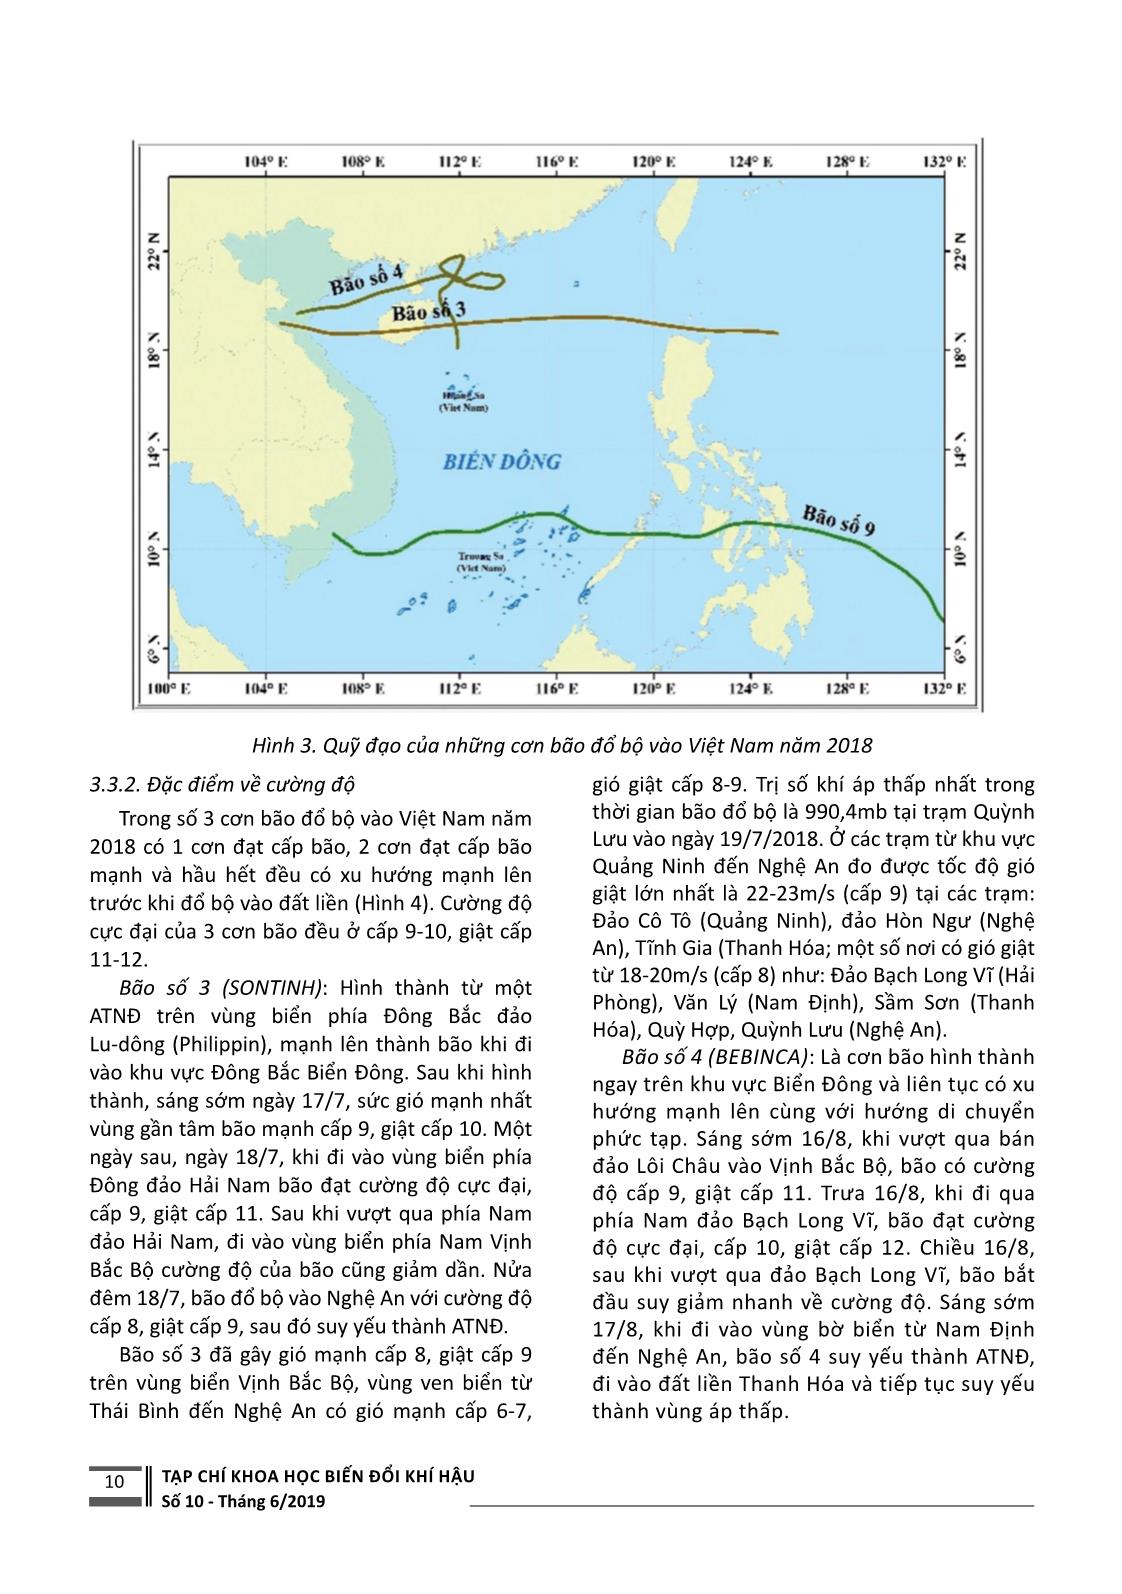 Đặc điểm hoạt động của xoáy thuận nhiệt đới ở Tây Bắc Thái Bình Dương, biển Đông và đổ bộ vào Việt Nam năm 2018 trang 5